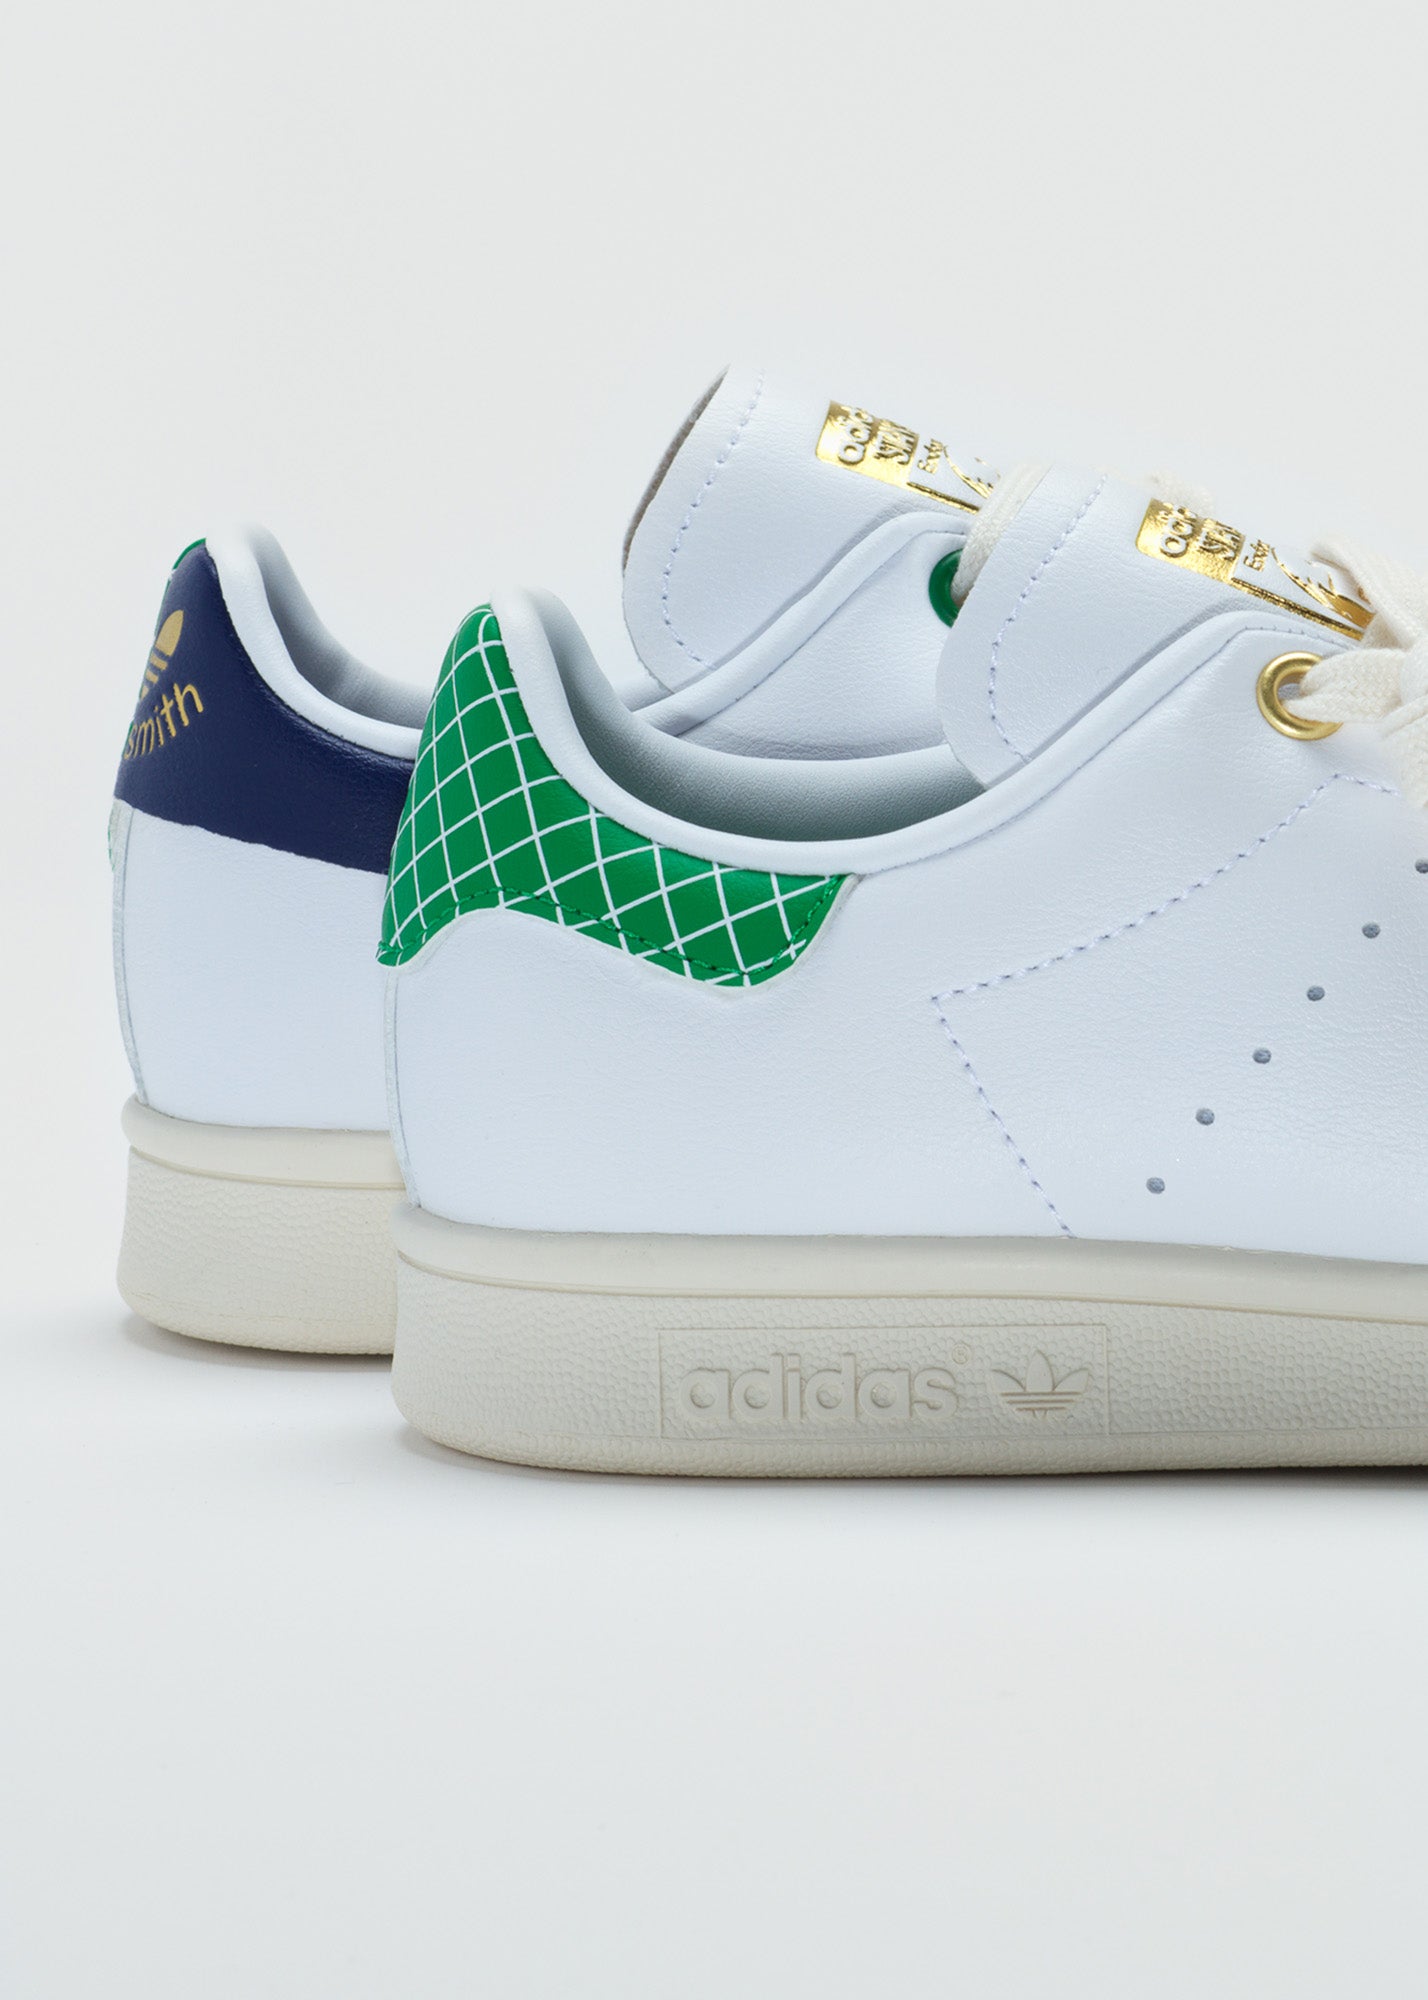 Adidas Stan Smith Cloud White/ Green/ Legacy Indigo